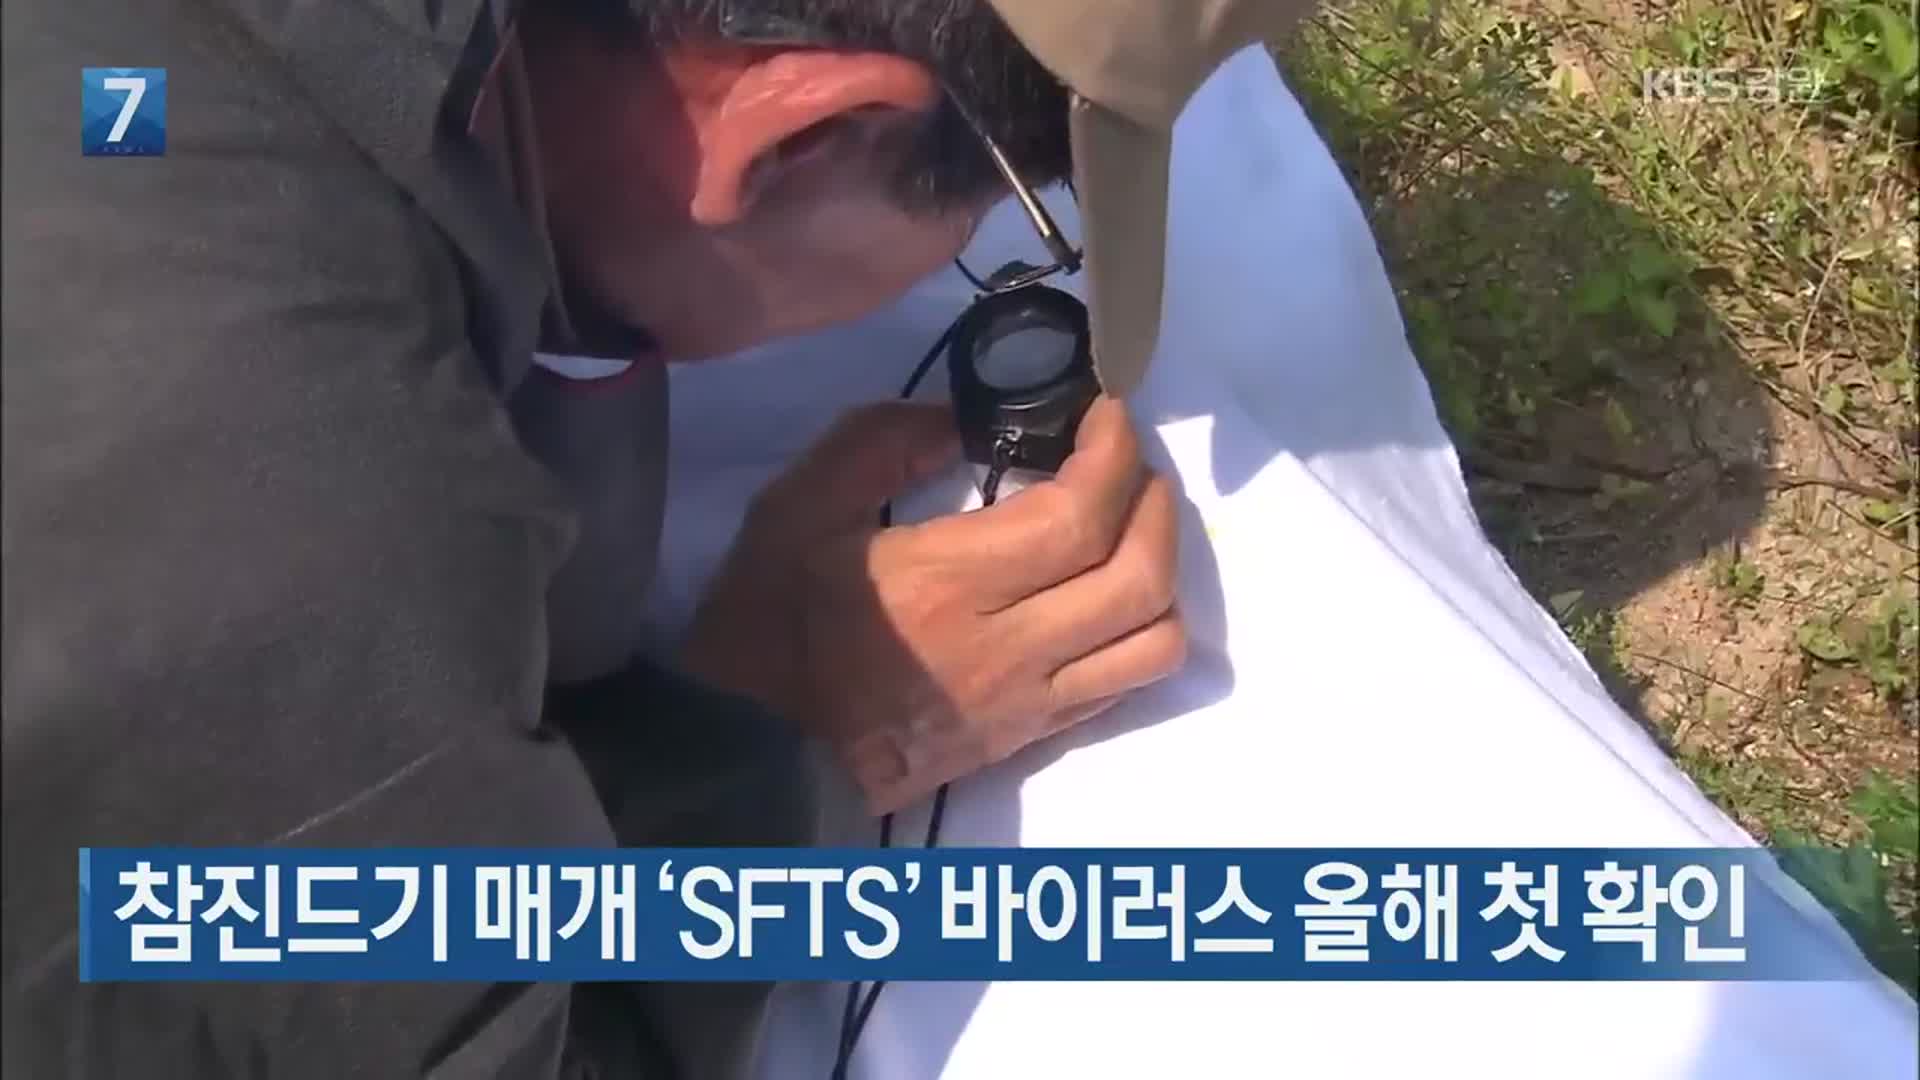 참진드기 매개 ‘SFTS’ 바이러스 올해 첫 확인